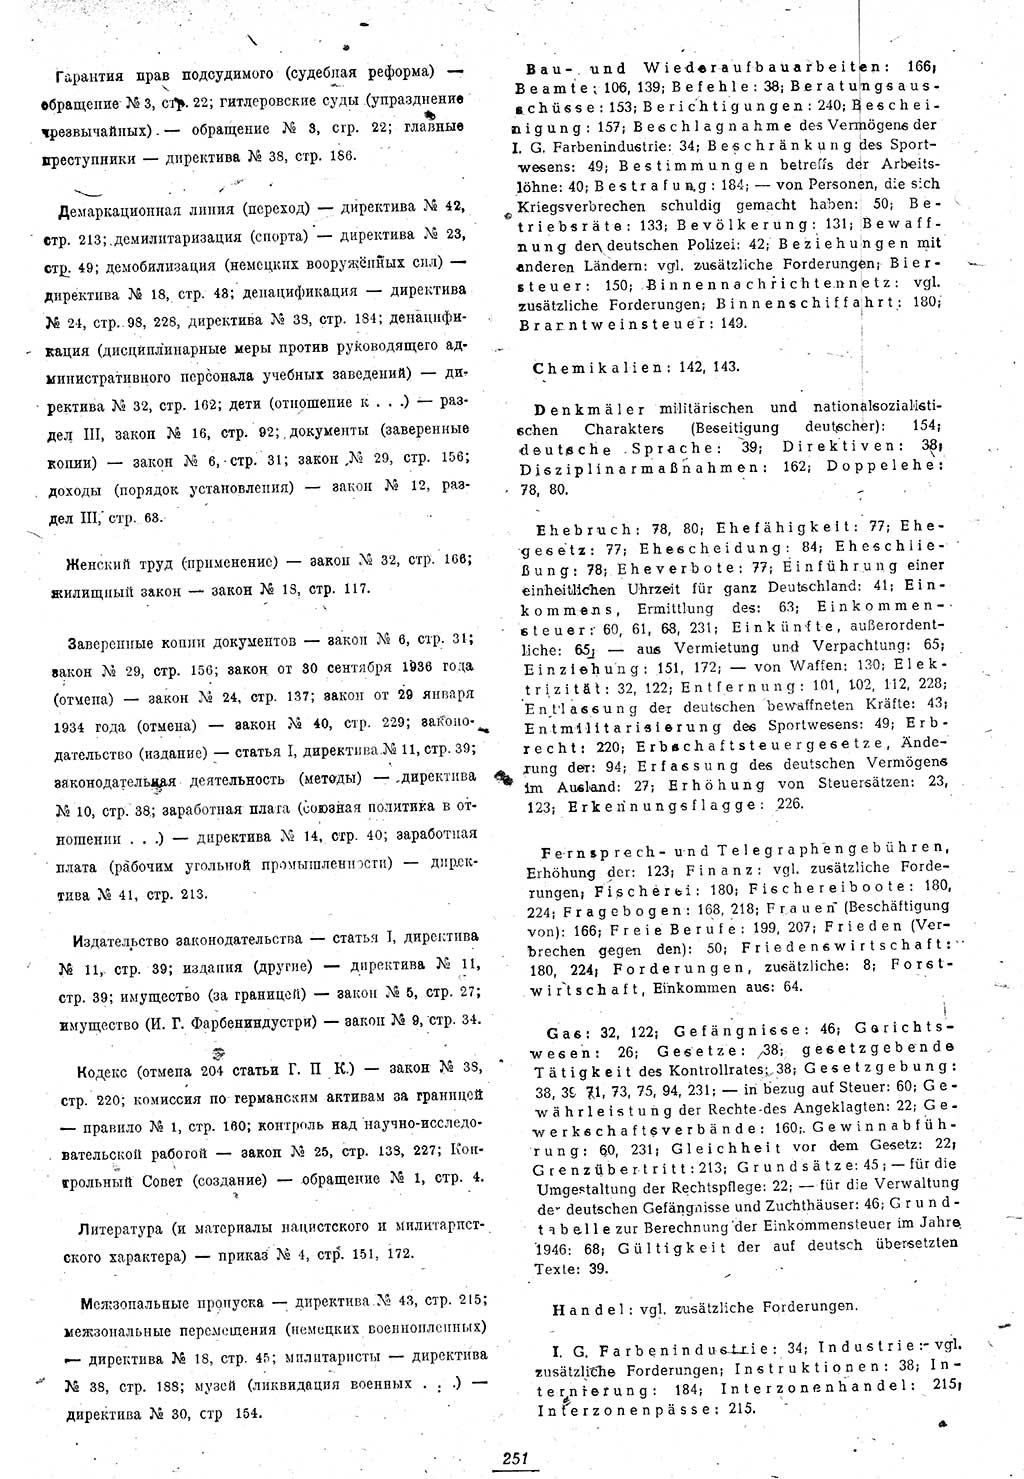 Amtsblatt des Kontrollrats (ABlKR) in Deutschland 1946, Seite 251/2 (ABlKR Dtl. 1946, S. 251/2)